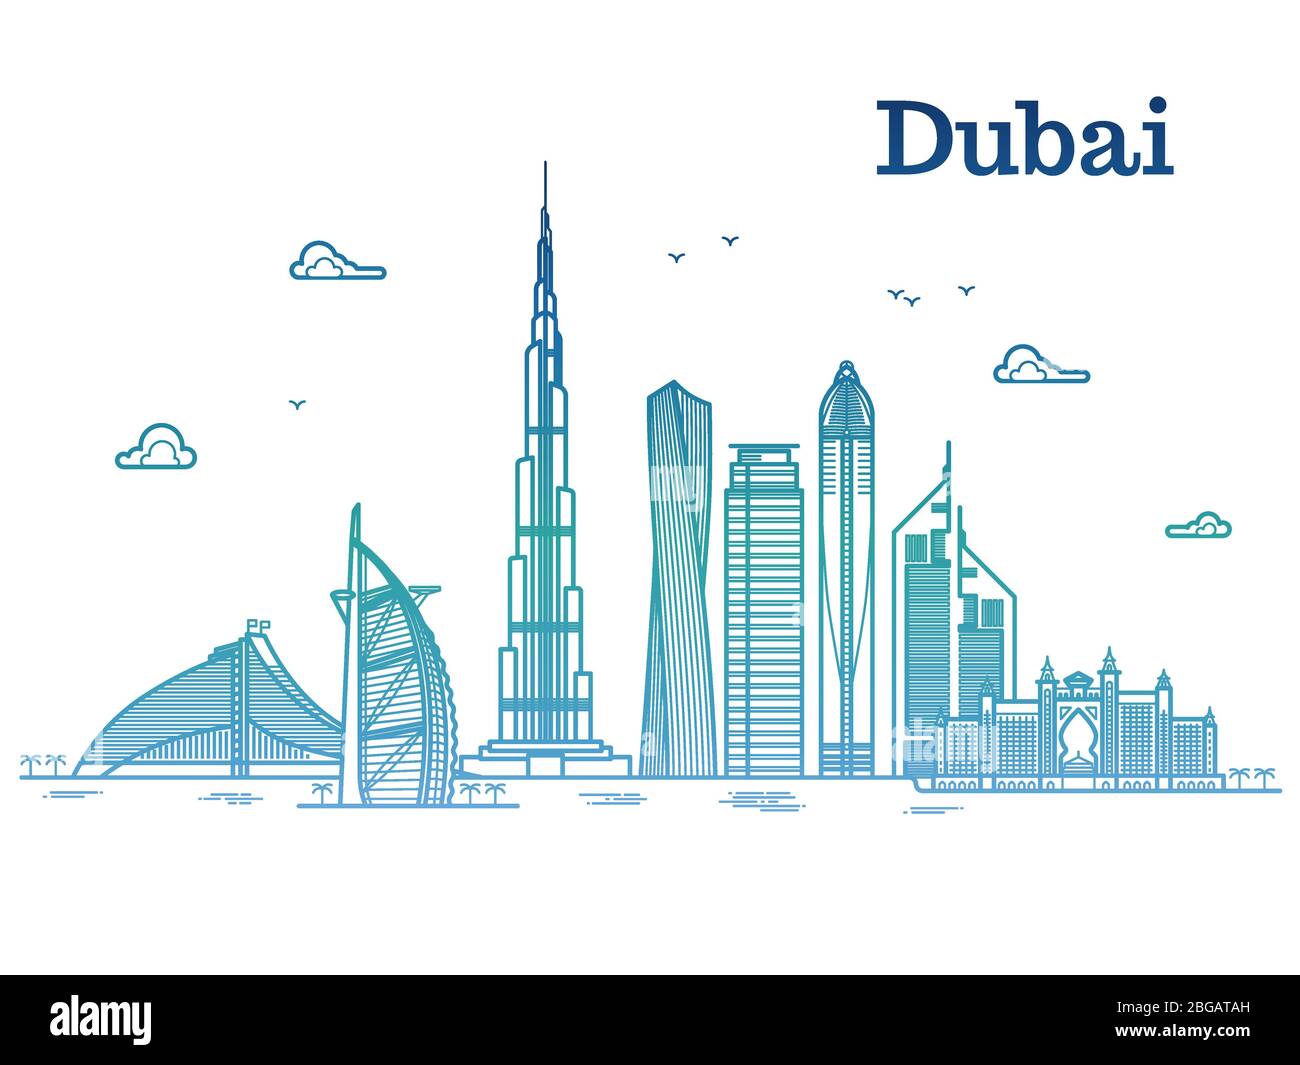 Farbenfrohe, detaillierte dubai-Linie Vektor-Stadtansicht mit Wolkenkratzern. Dubai Stadthaus, Business City Illustration Stock Vektor